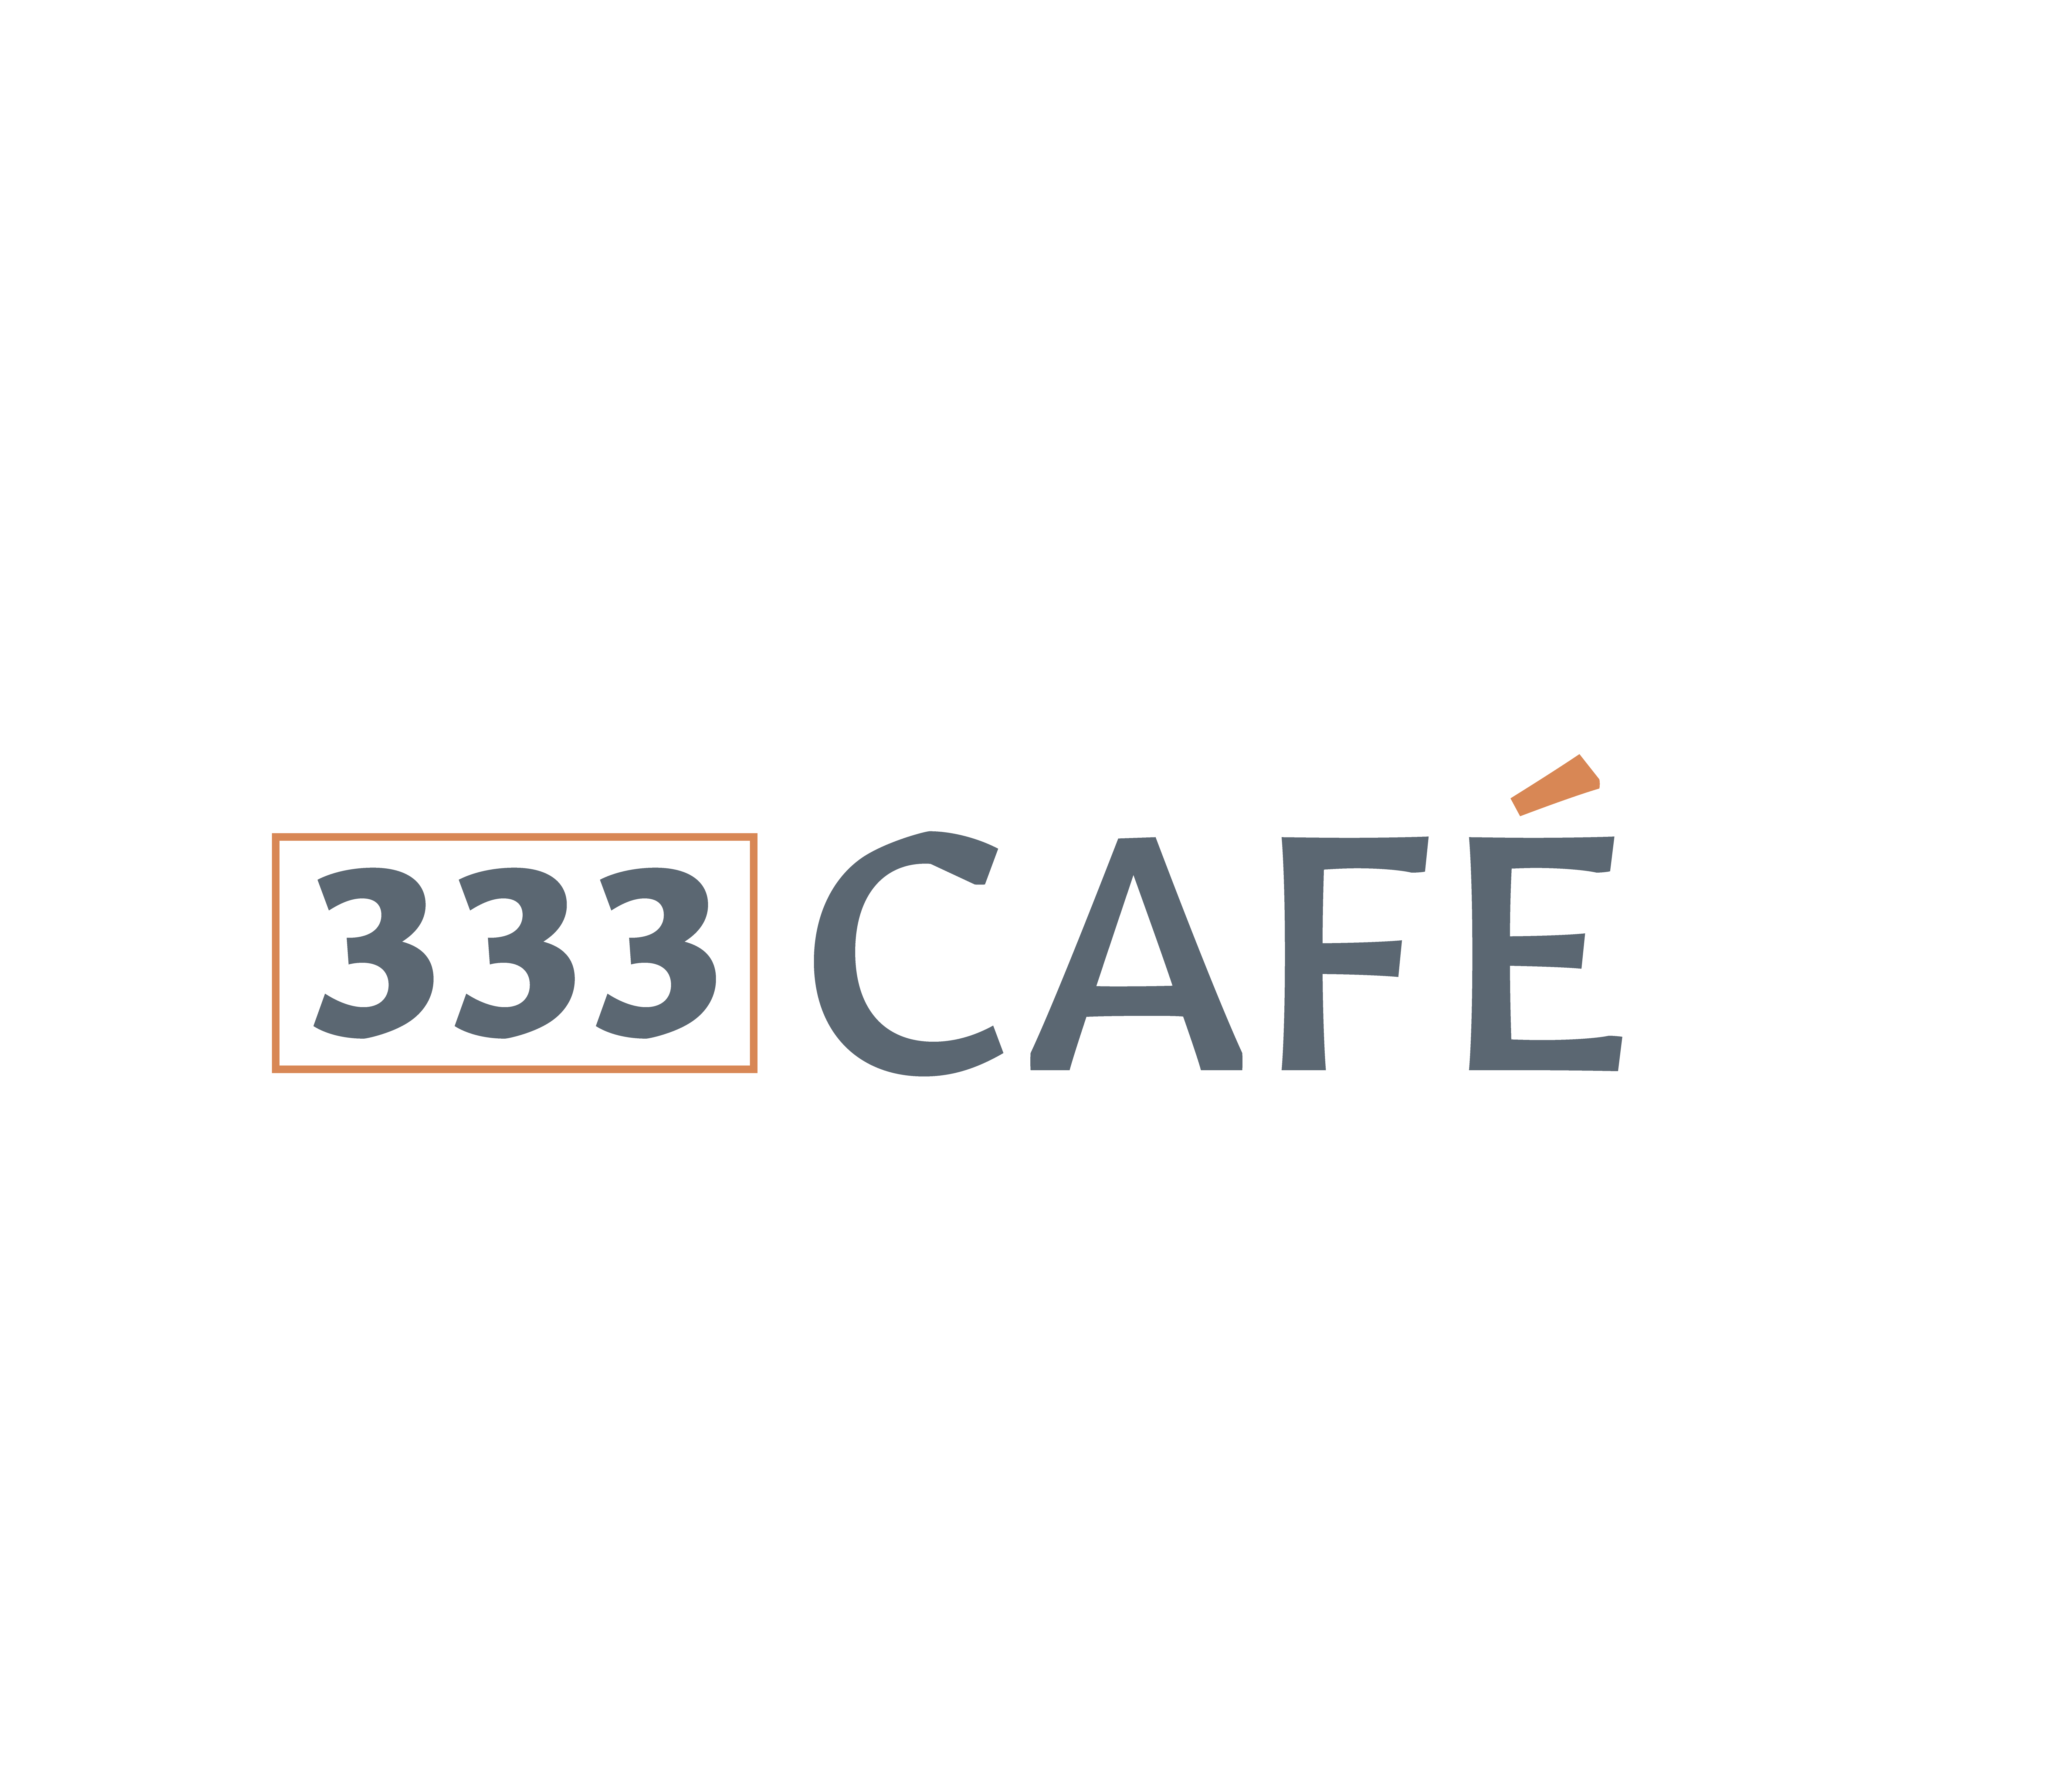 Nexdine's Café 333